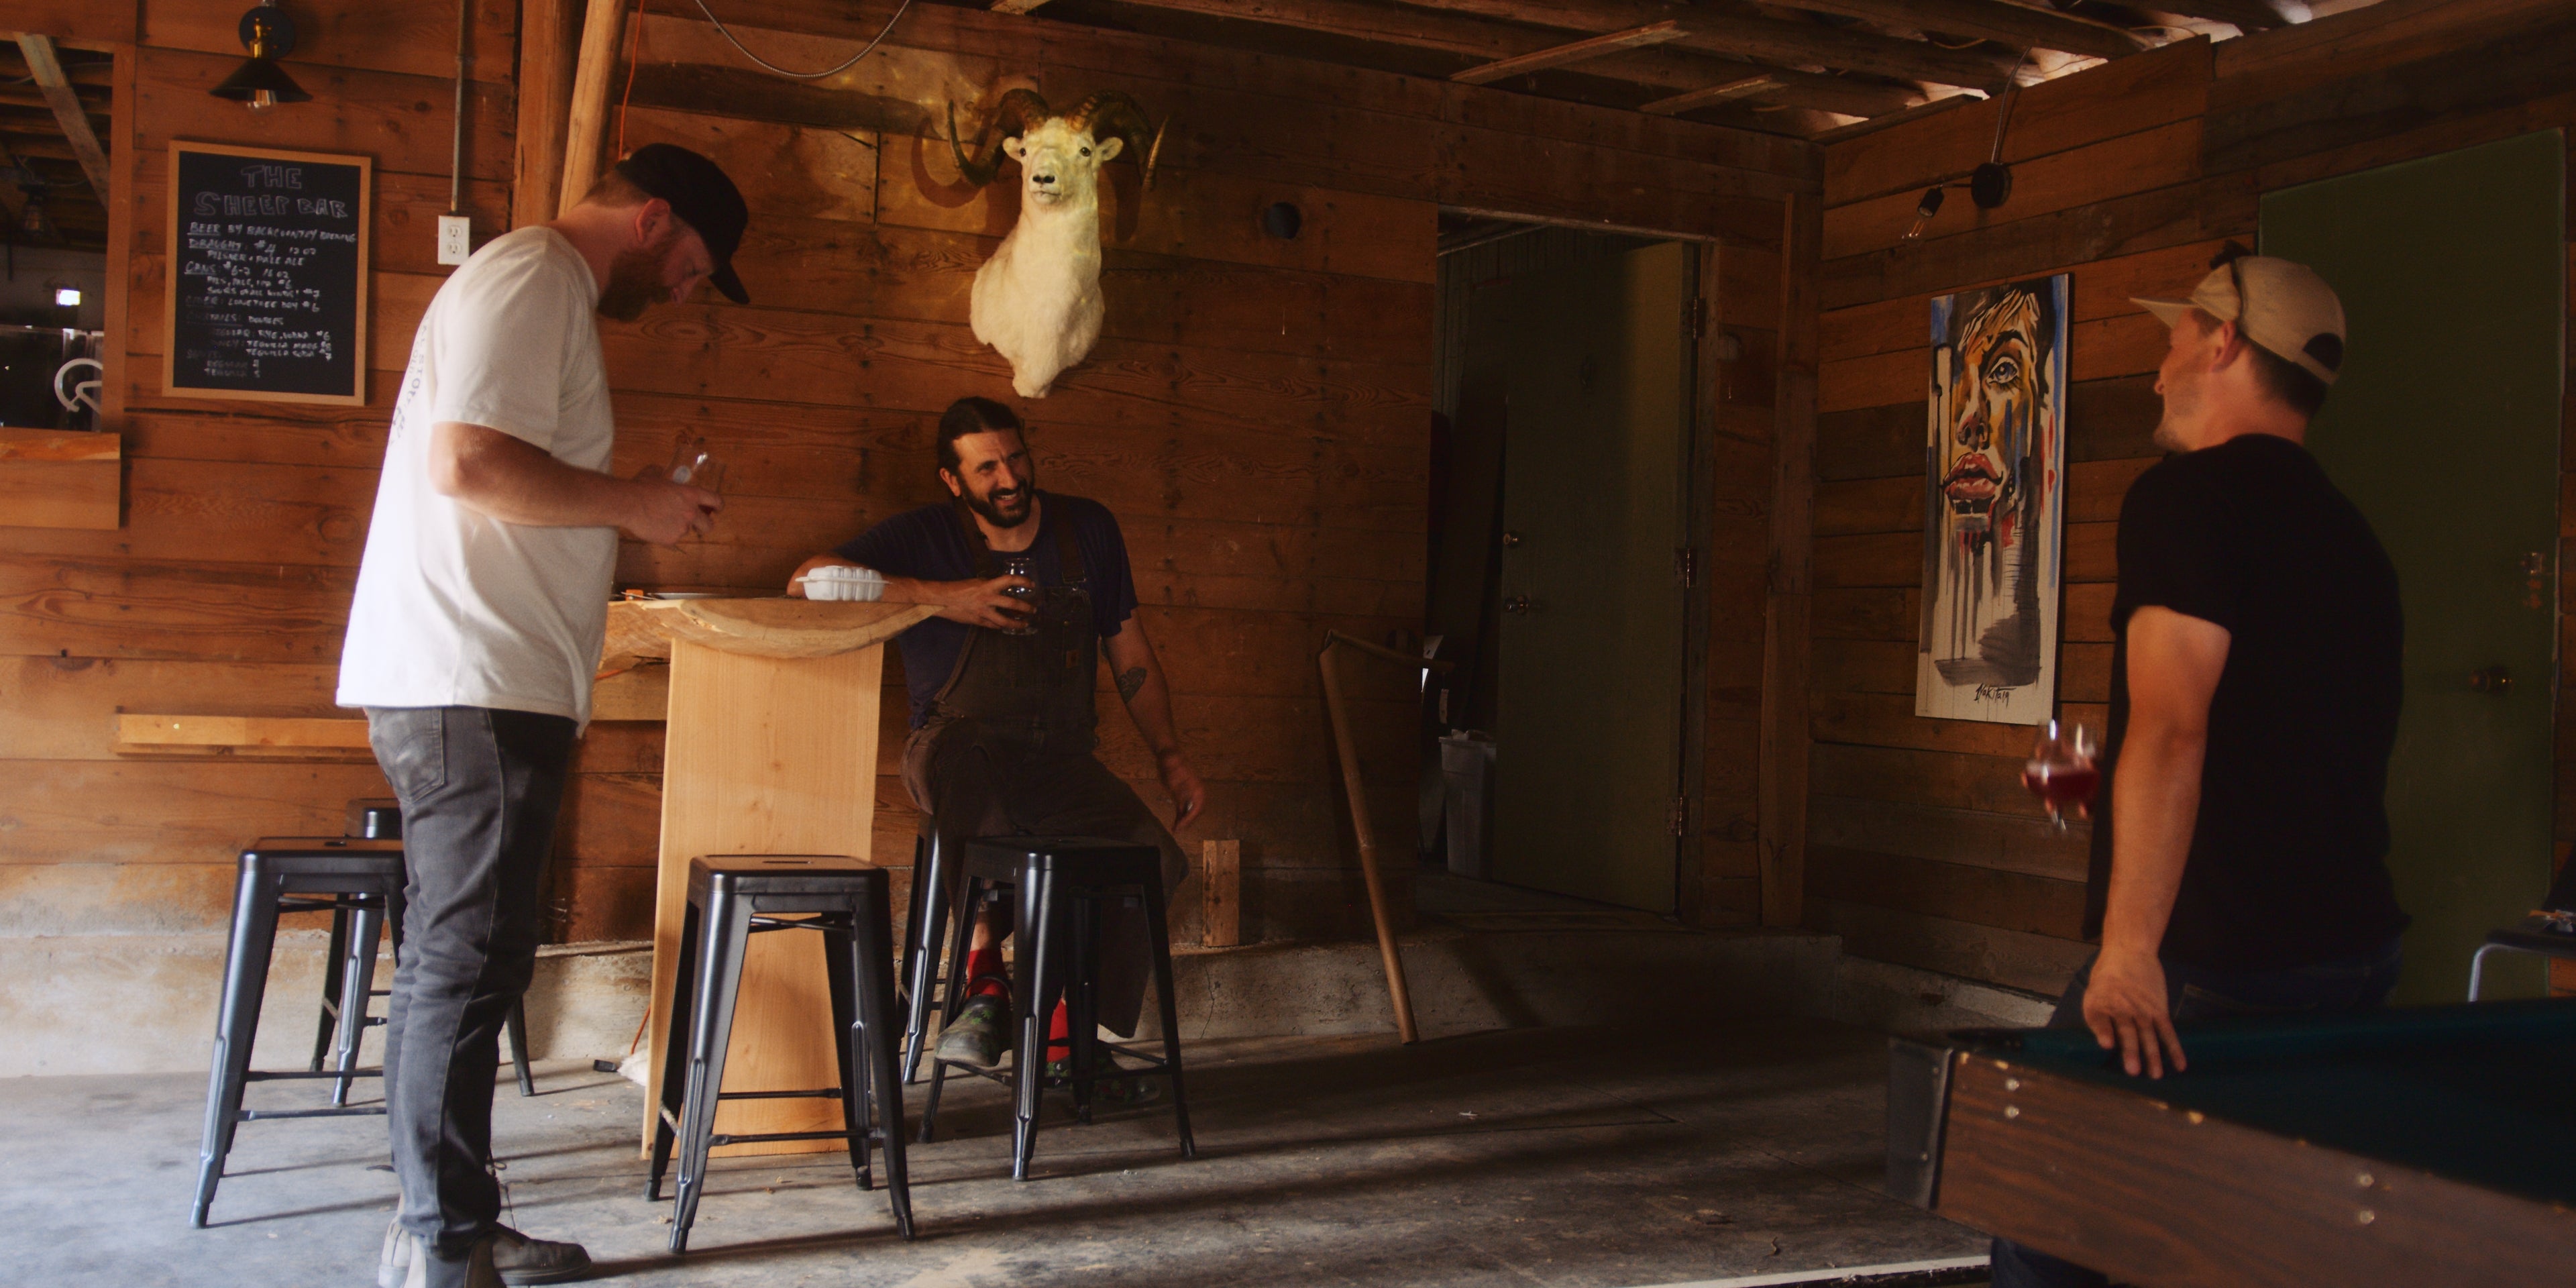 Jordan, Matt, and Isaiah all sharing a beer in the hop barn